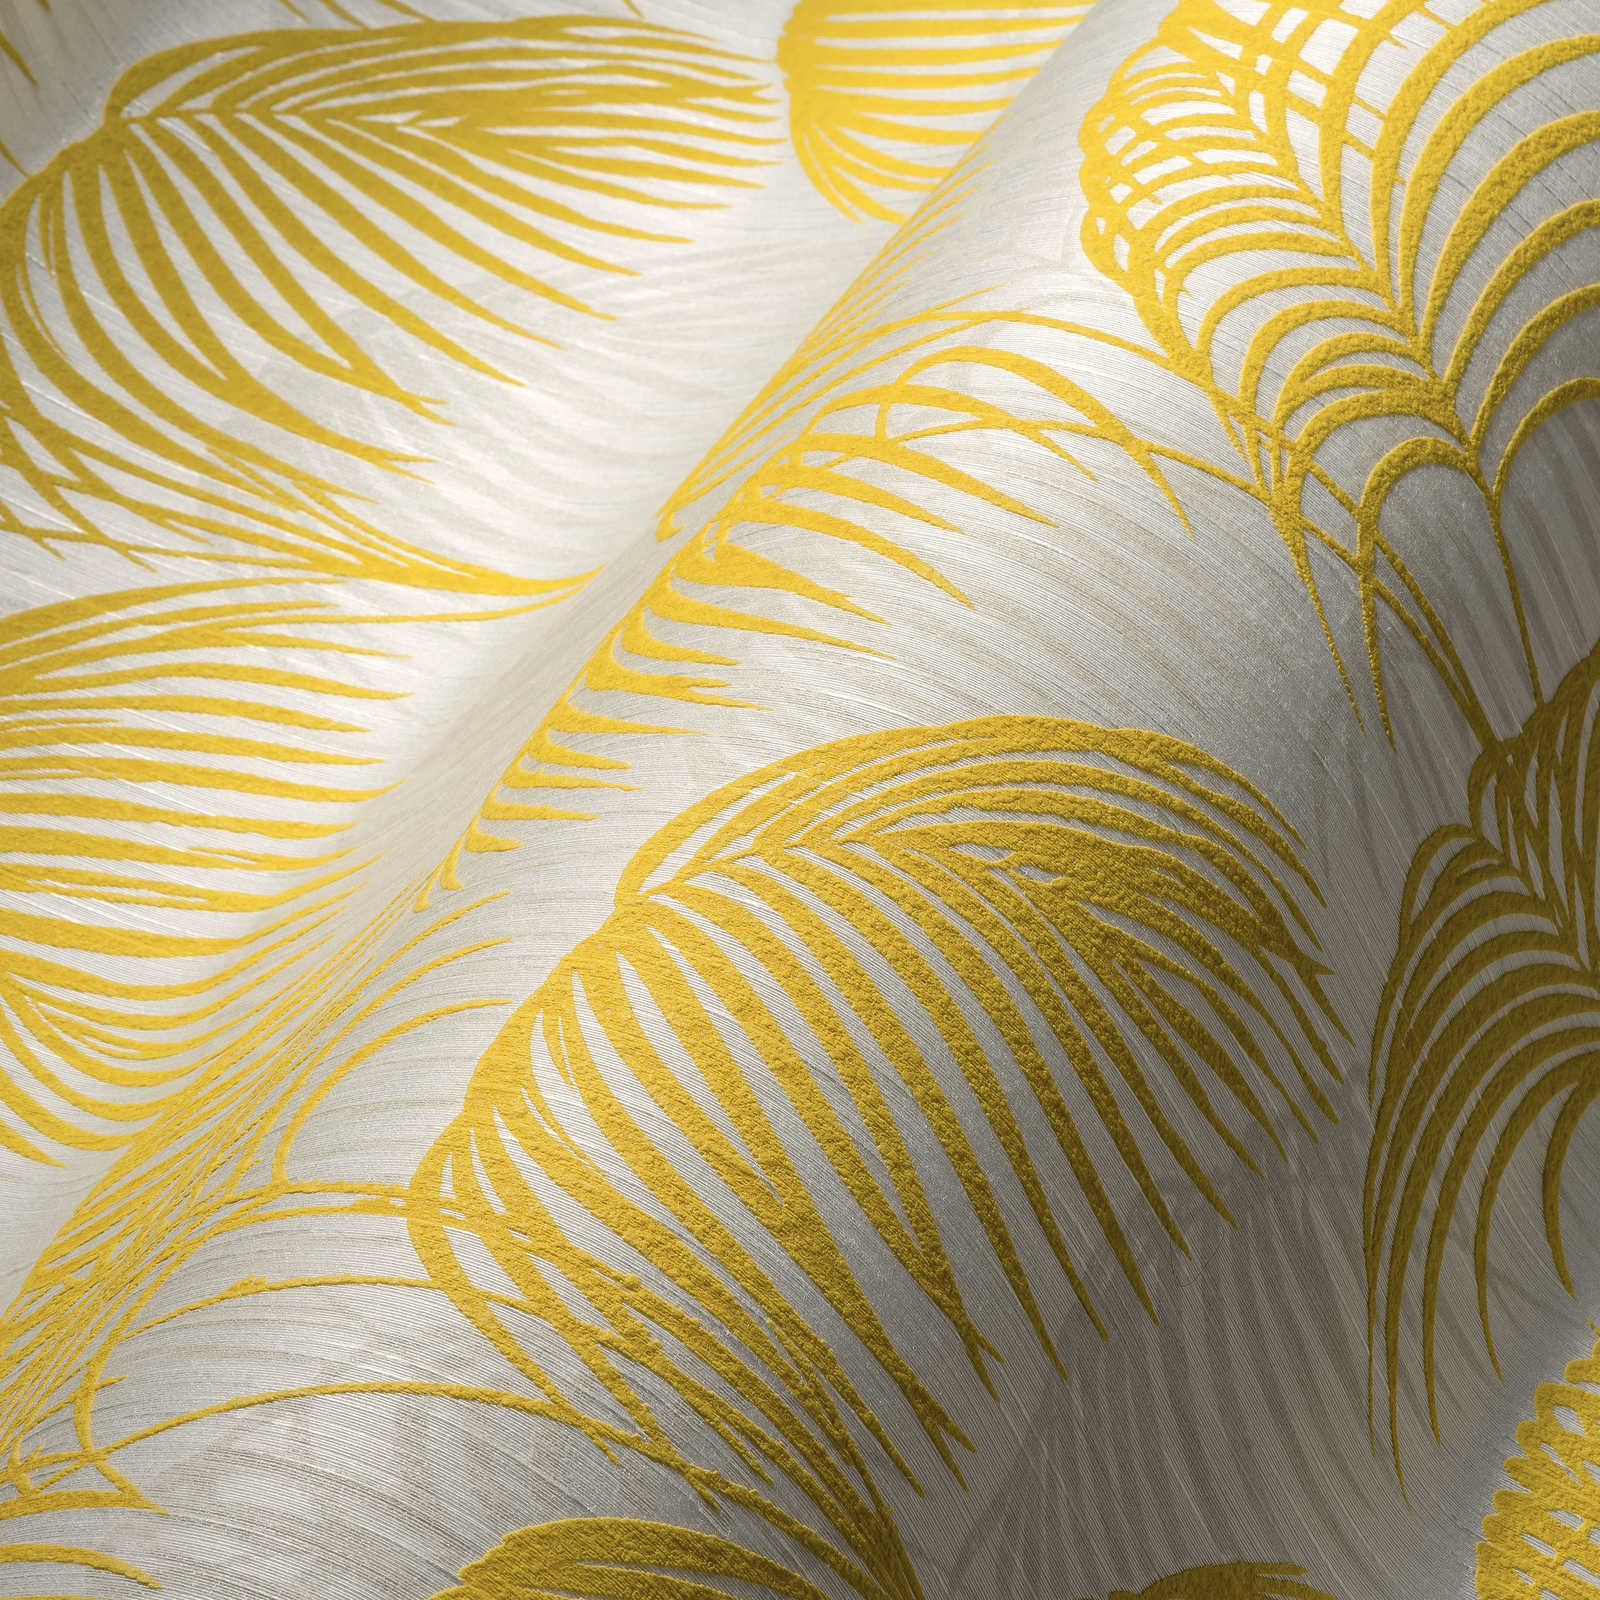             Papier peint palmier avec effet doré & design texturé - métallique, blanc
        